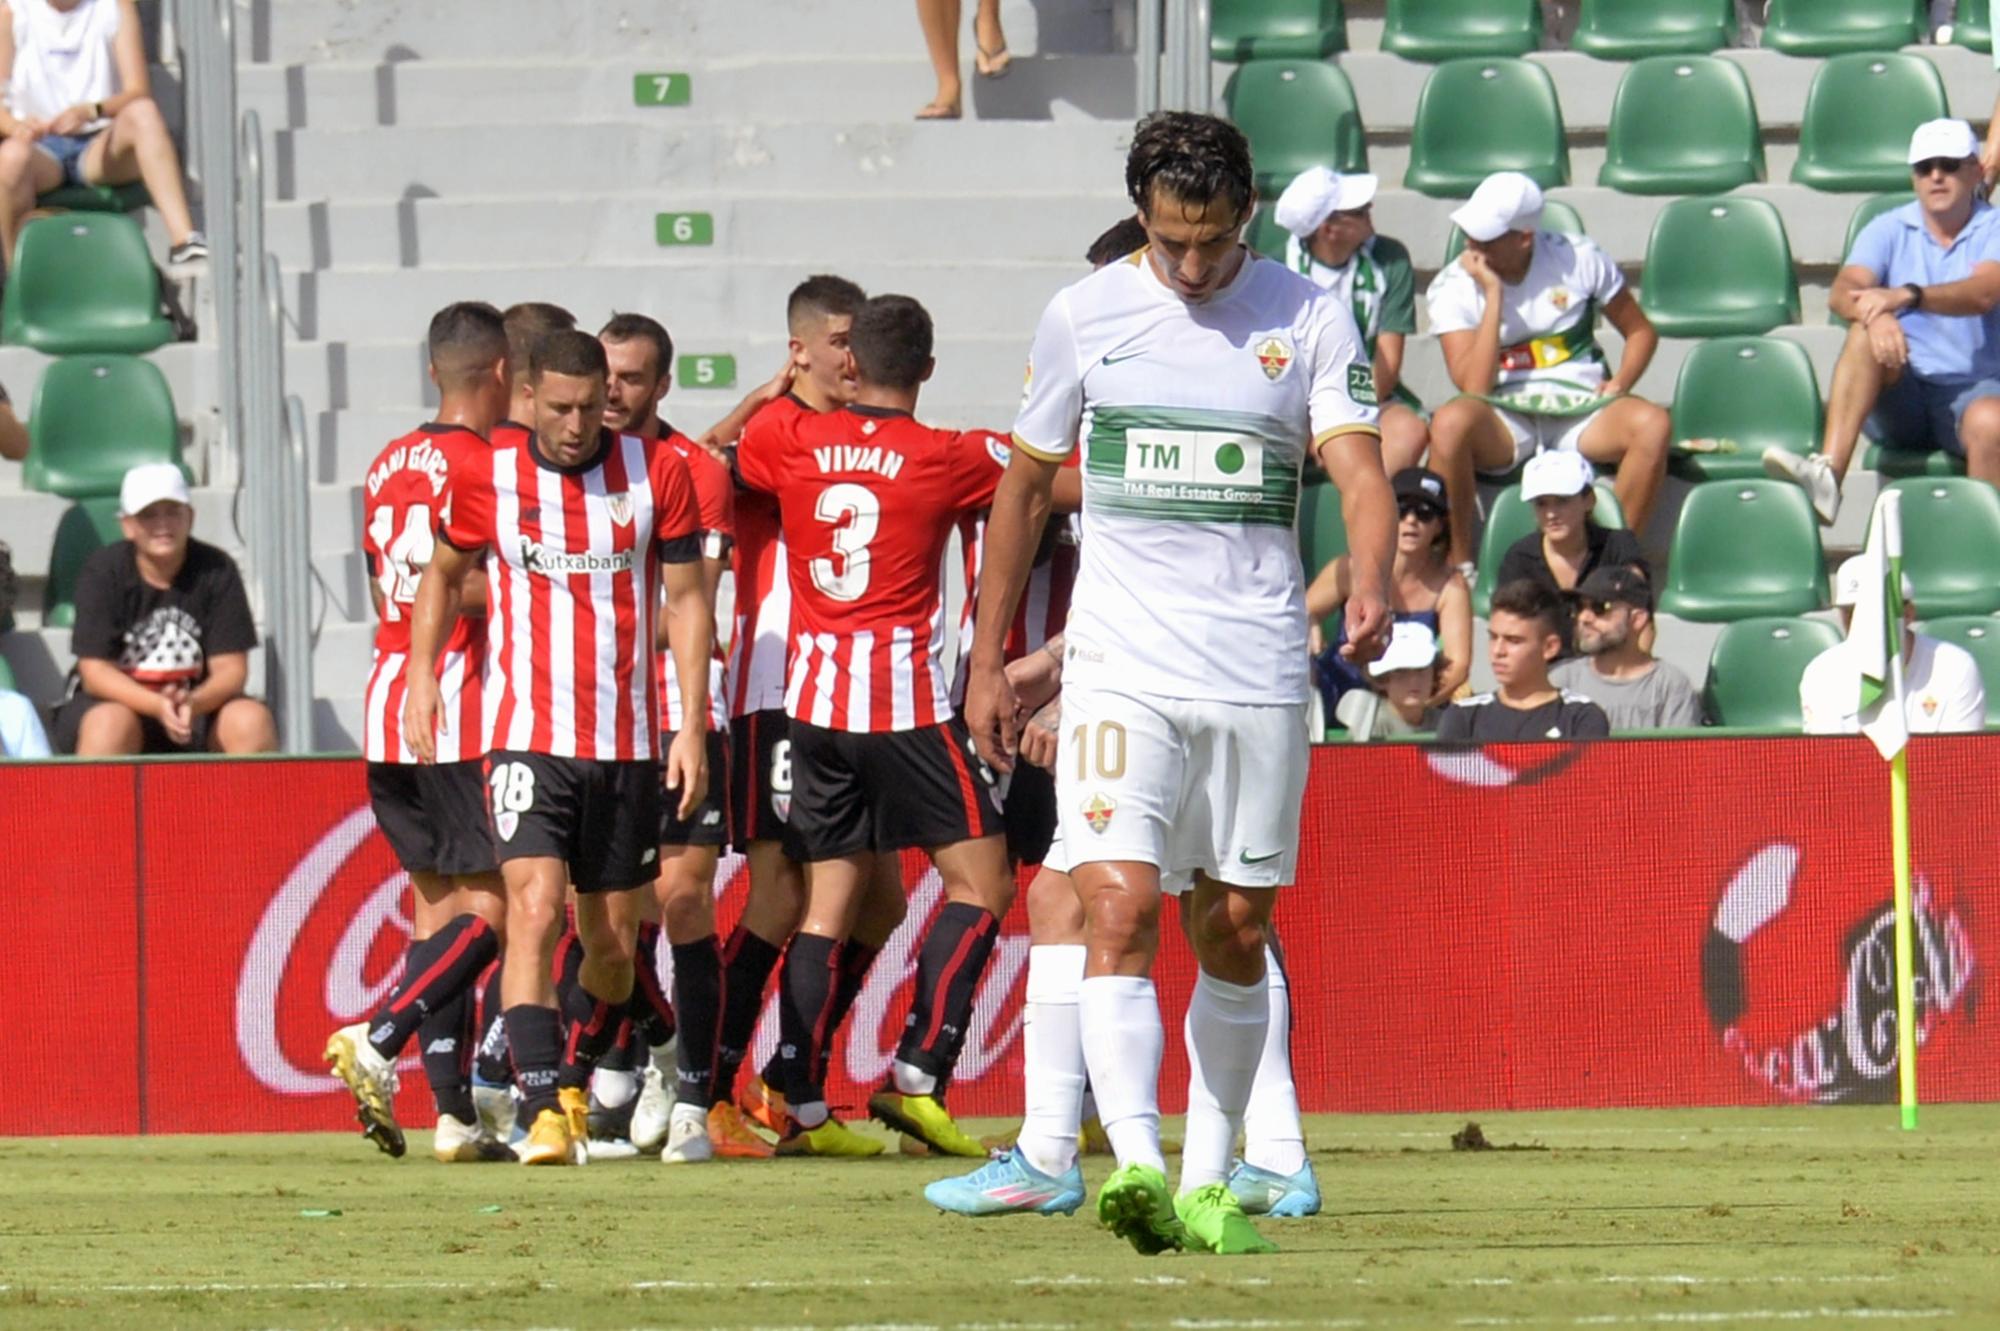 Una verbena en defensa, Elche CF:1  Athletic Club de Bilbao: 4